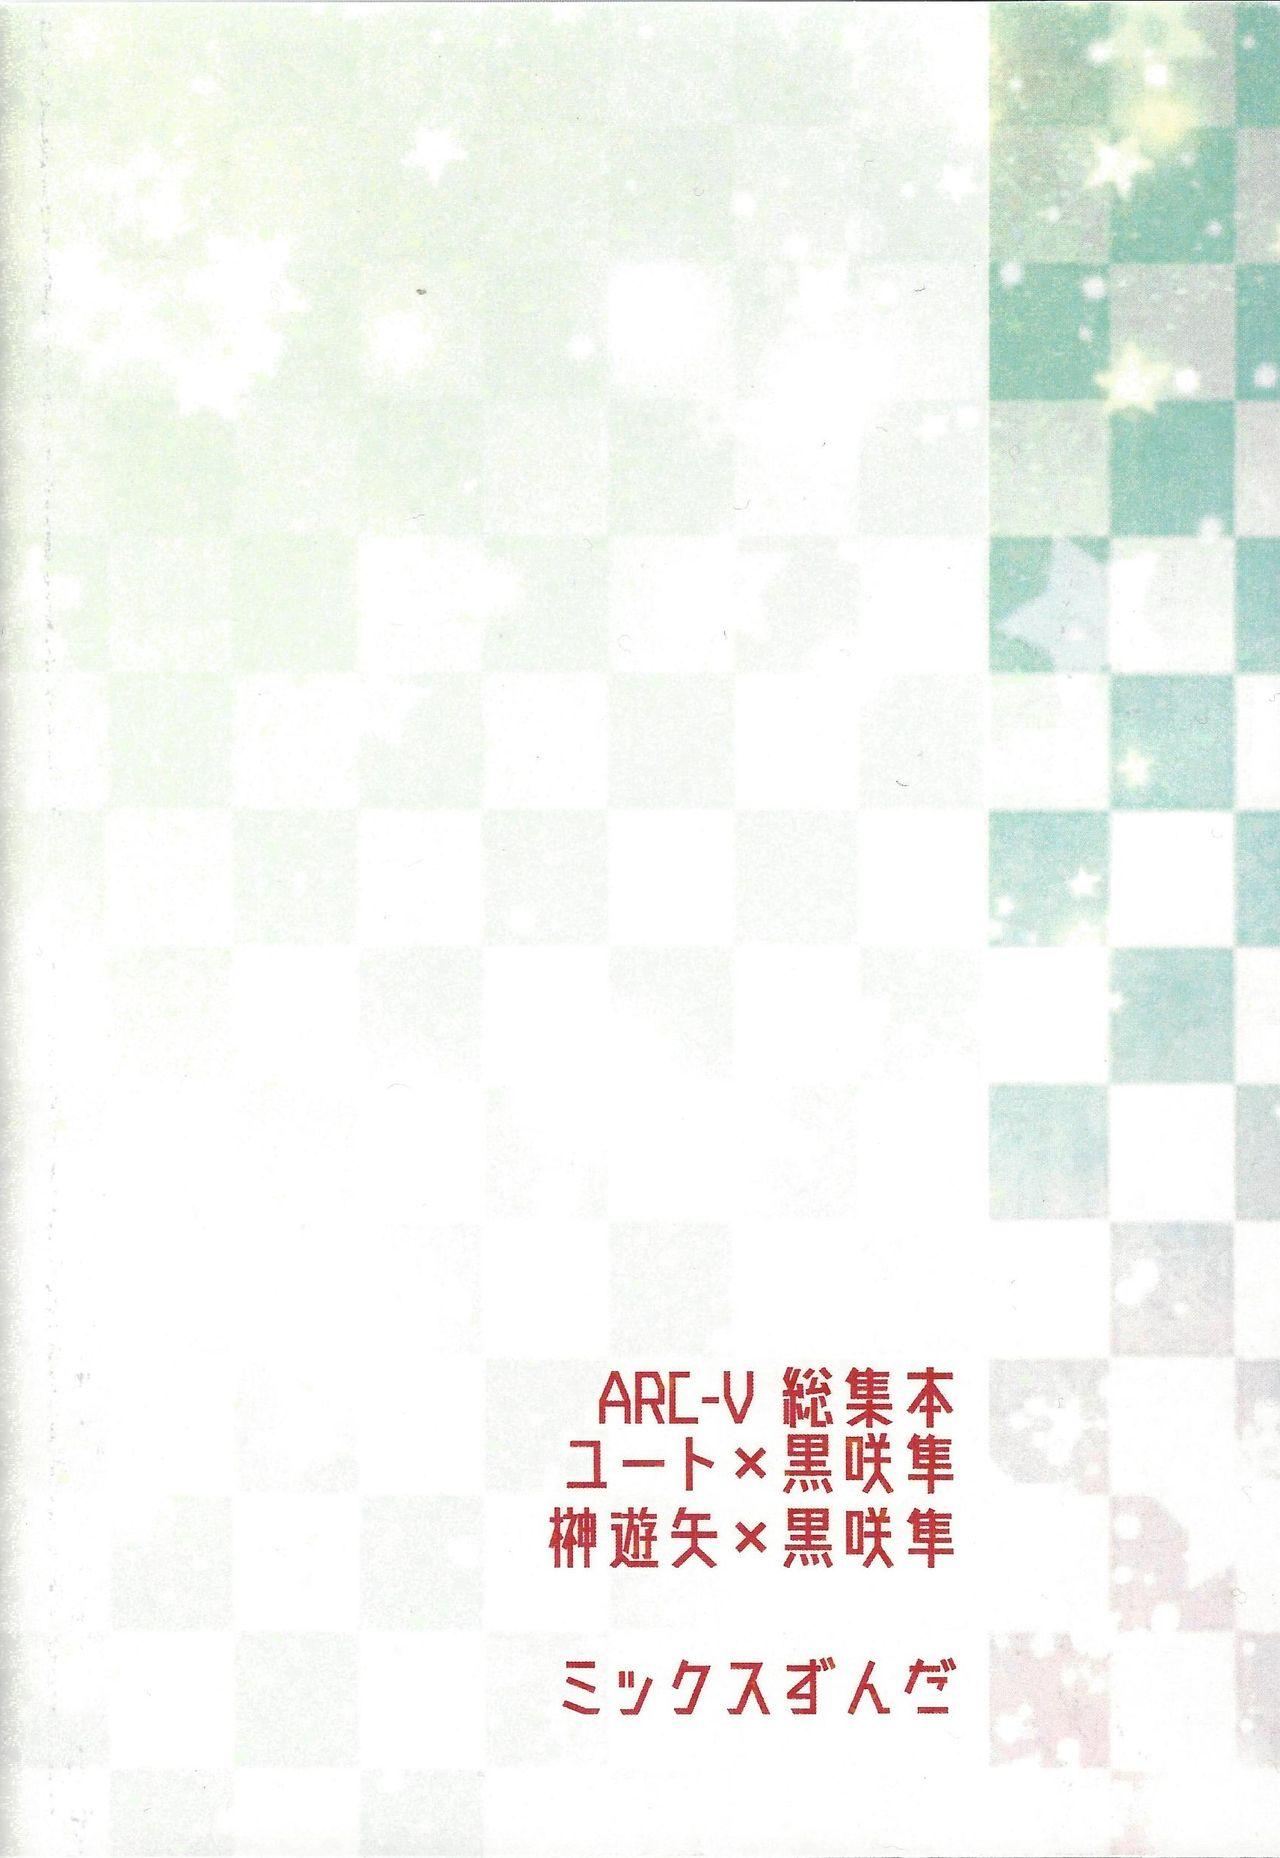 Danshi hanran gunbyō no nichijō REMIX 189